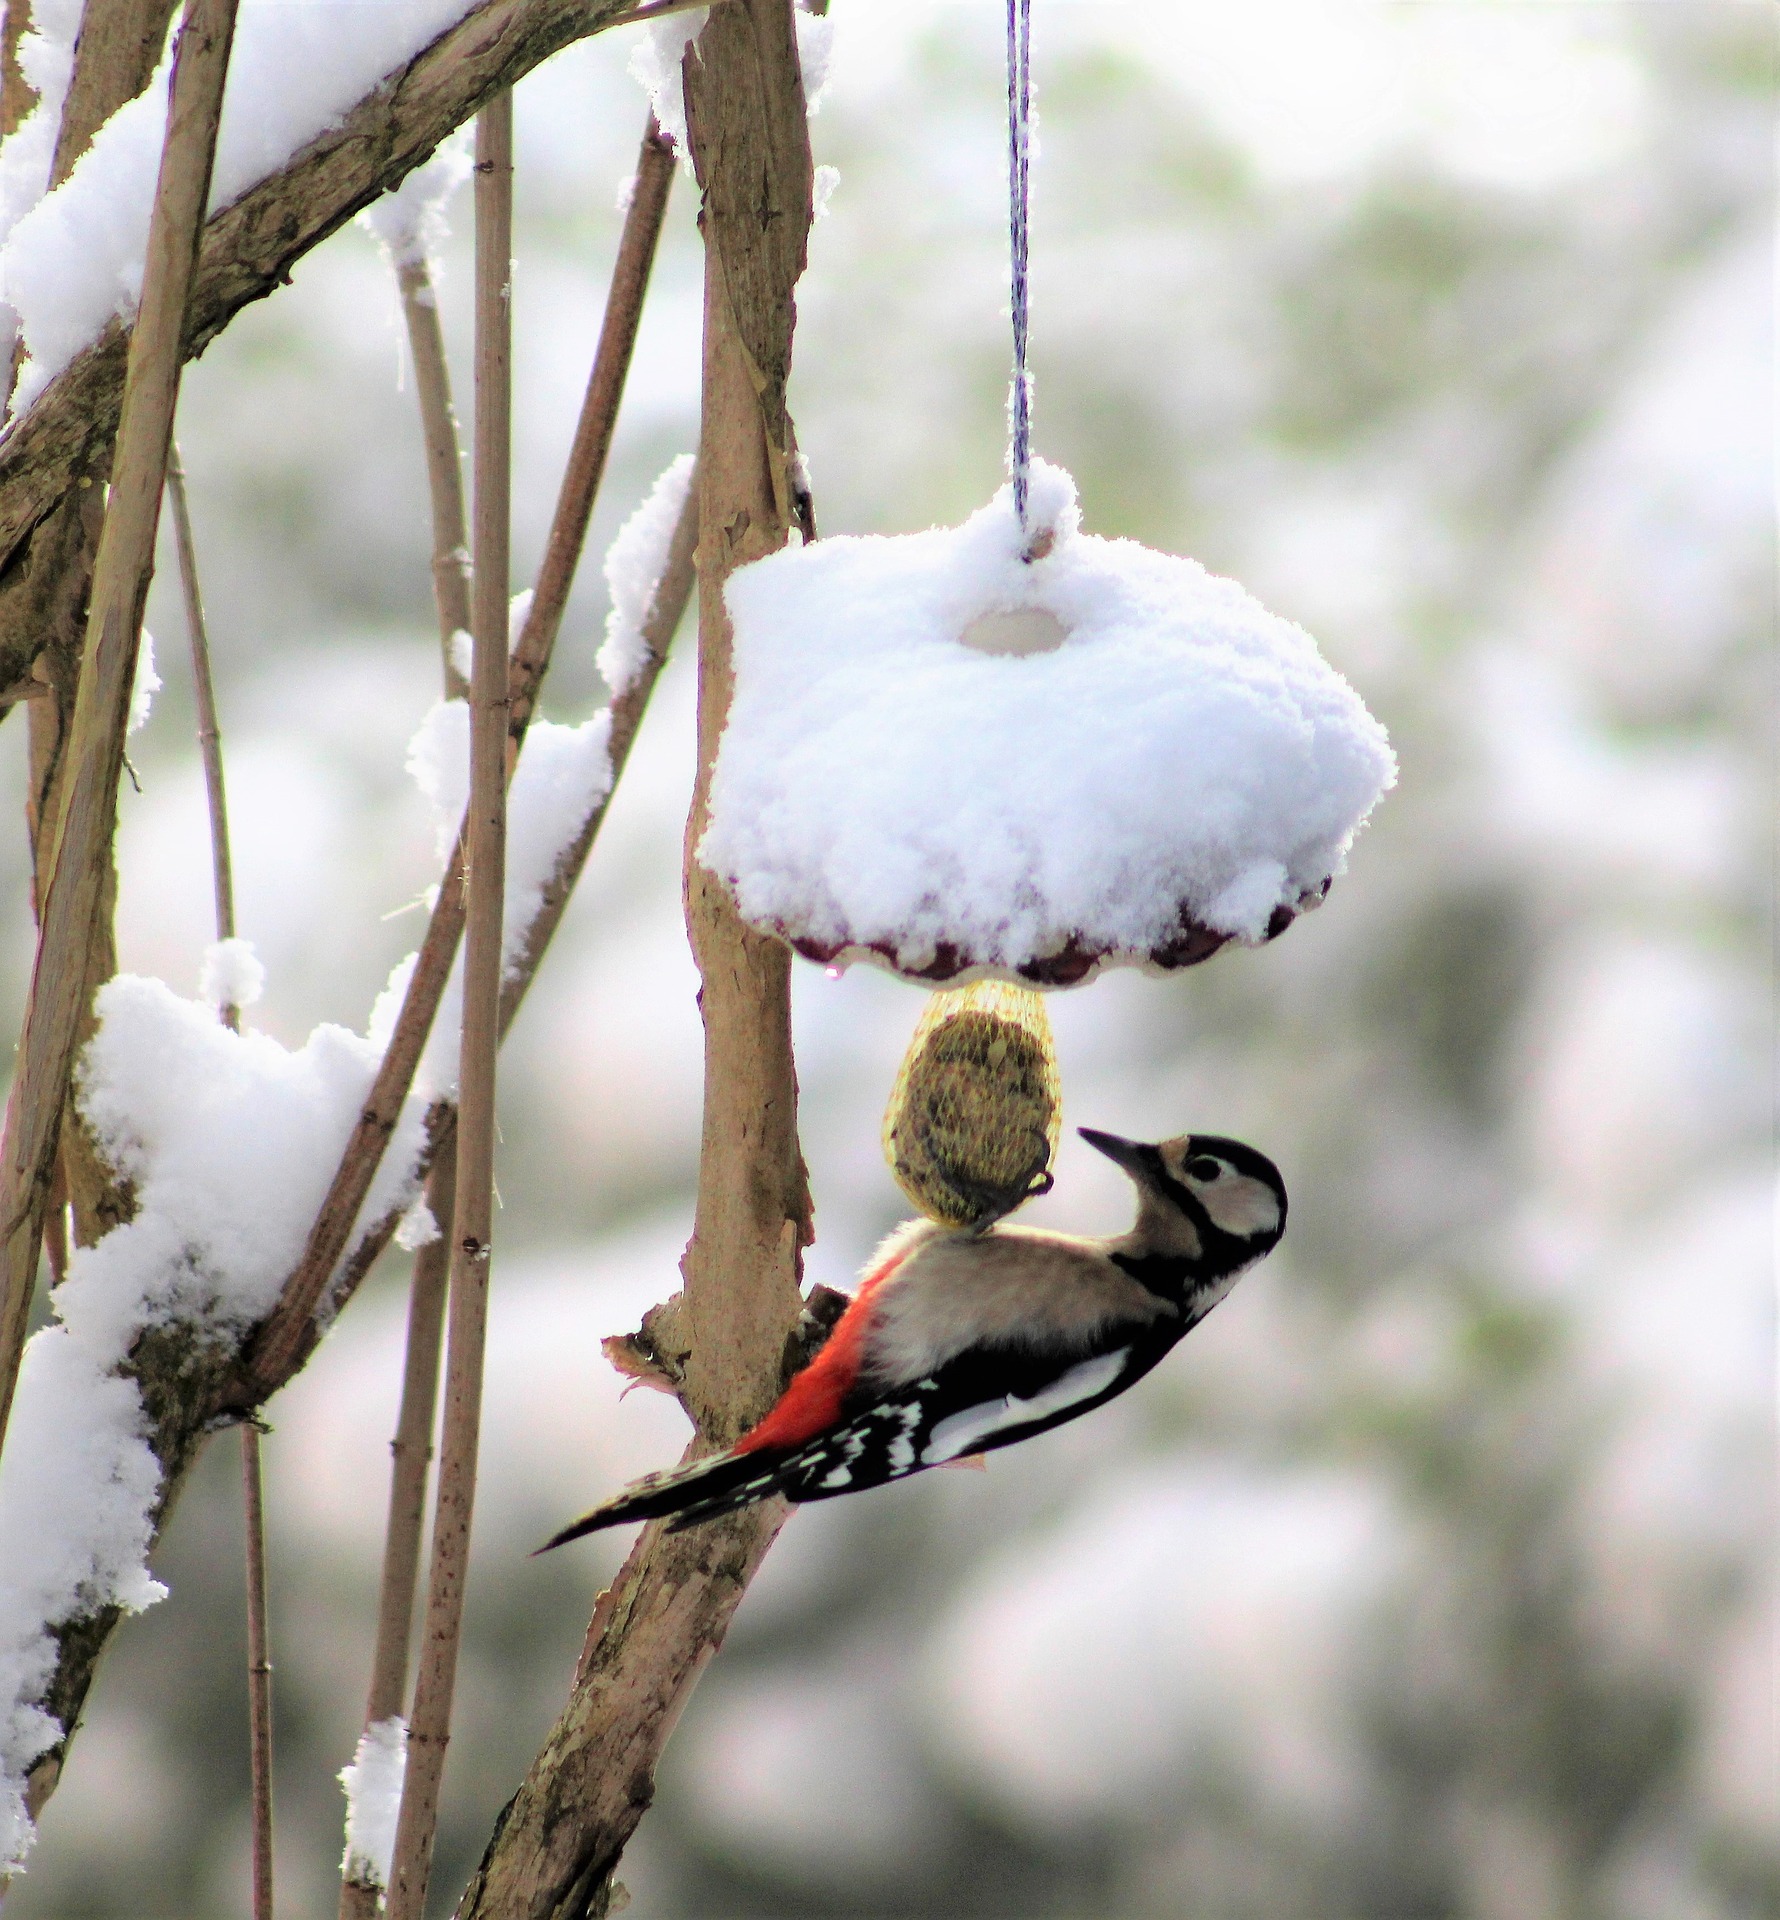 Nourrir les oiseaux l'hiver (version longue) – biodiversité